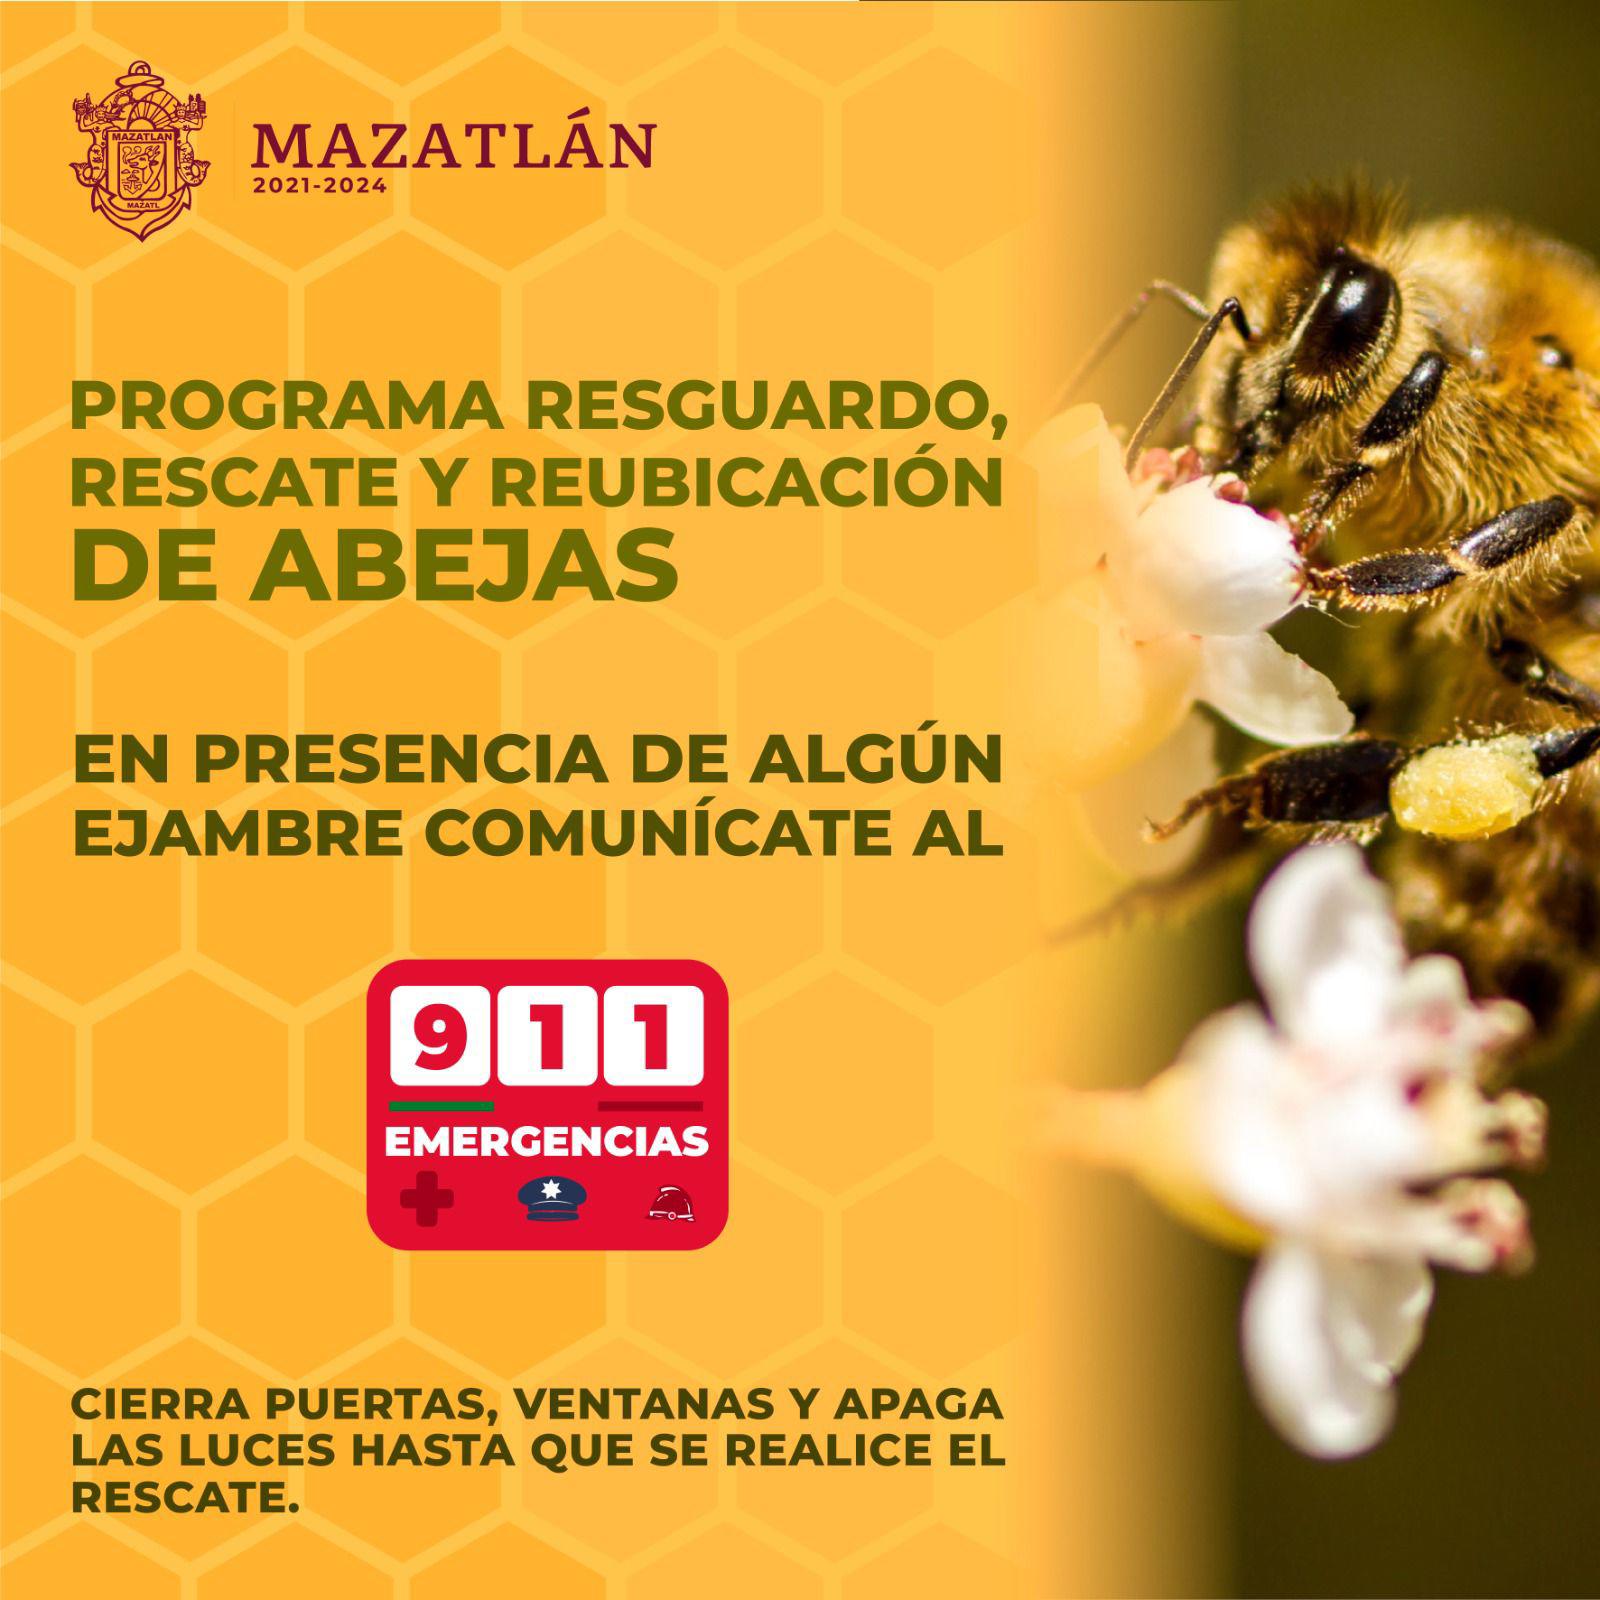 $!Mazatlán protege y rescata a las abejas; llaman a no hacerles daño